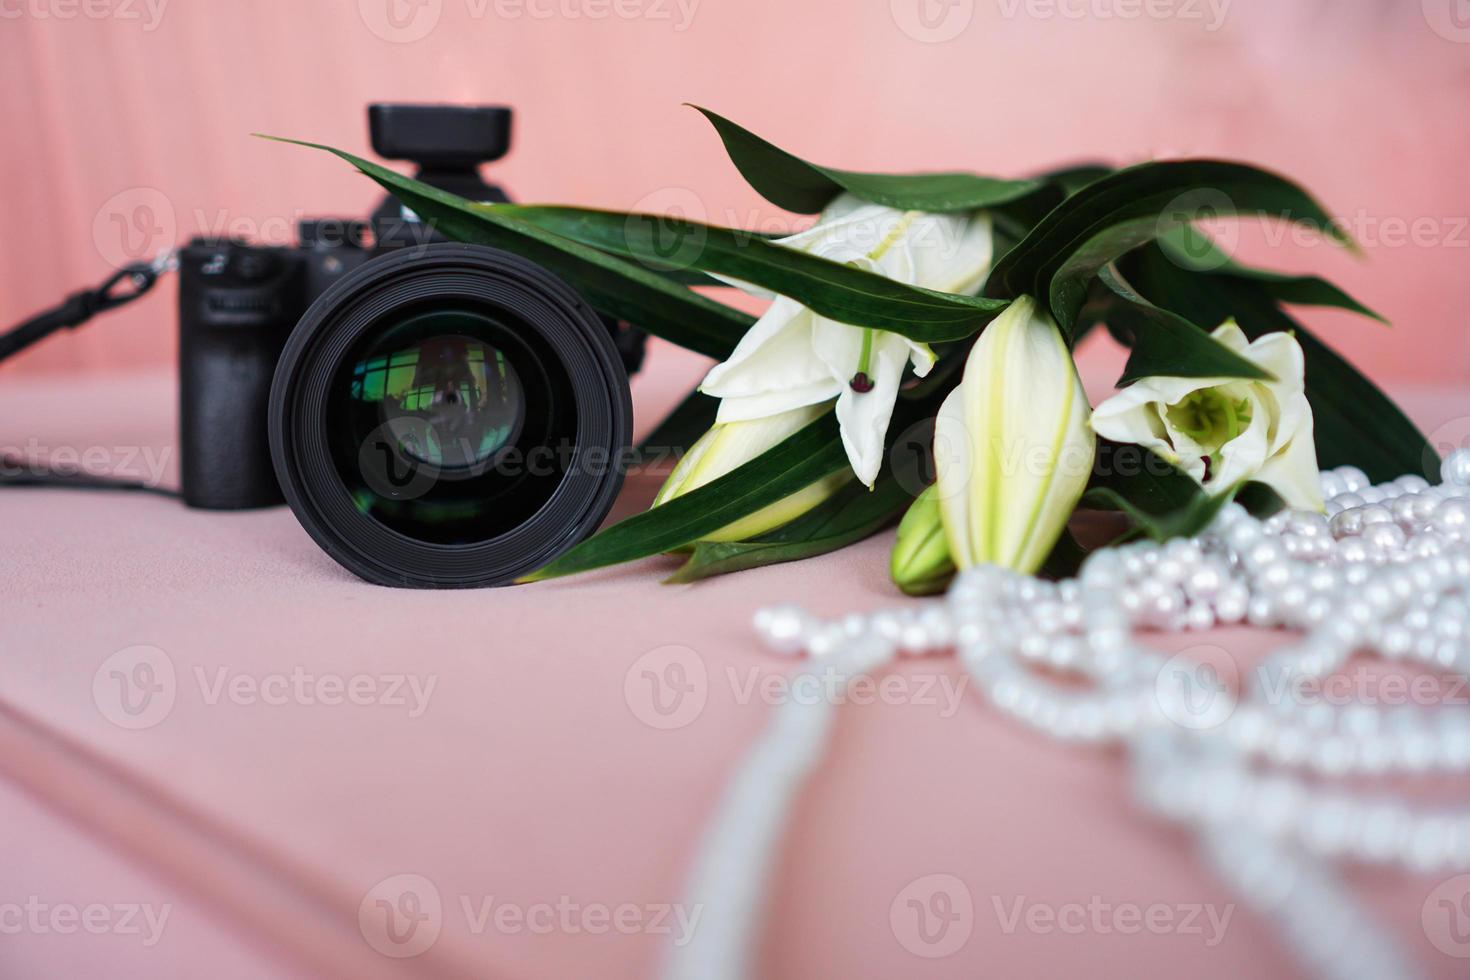 appareil photo noir avec un objectif et des lys blancs et un collier de perles